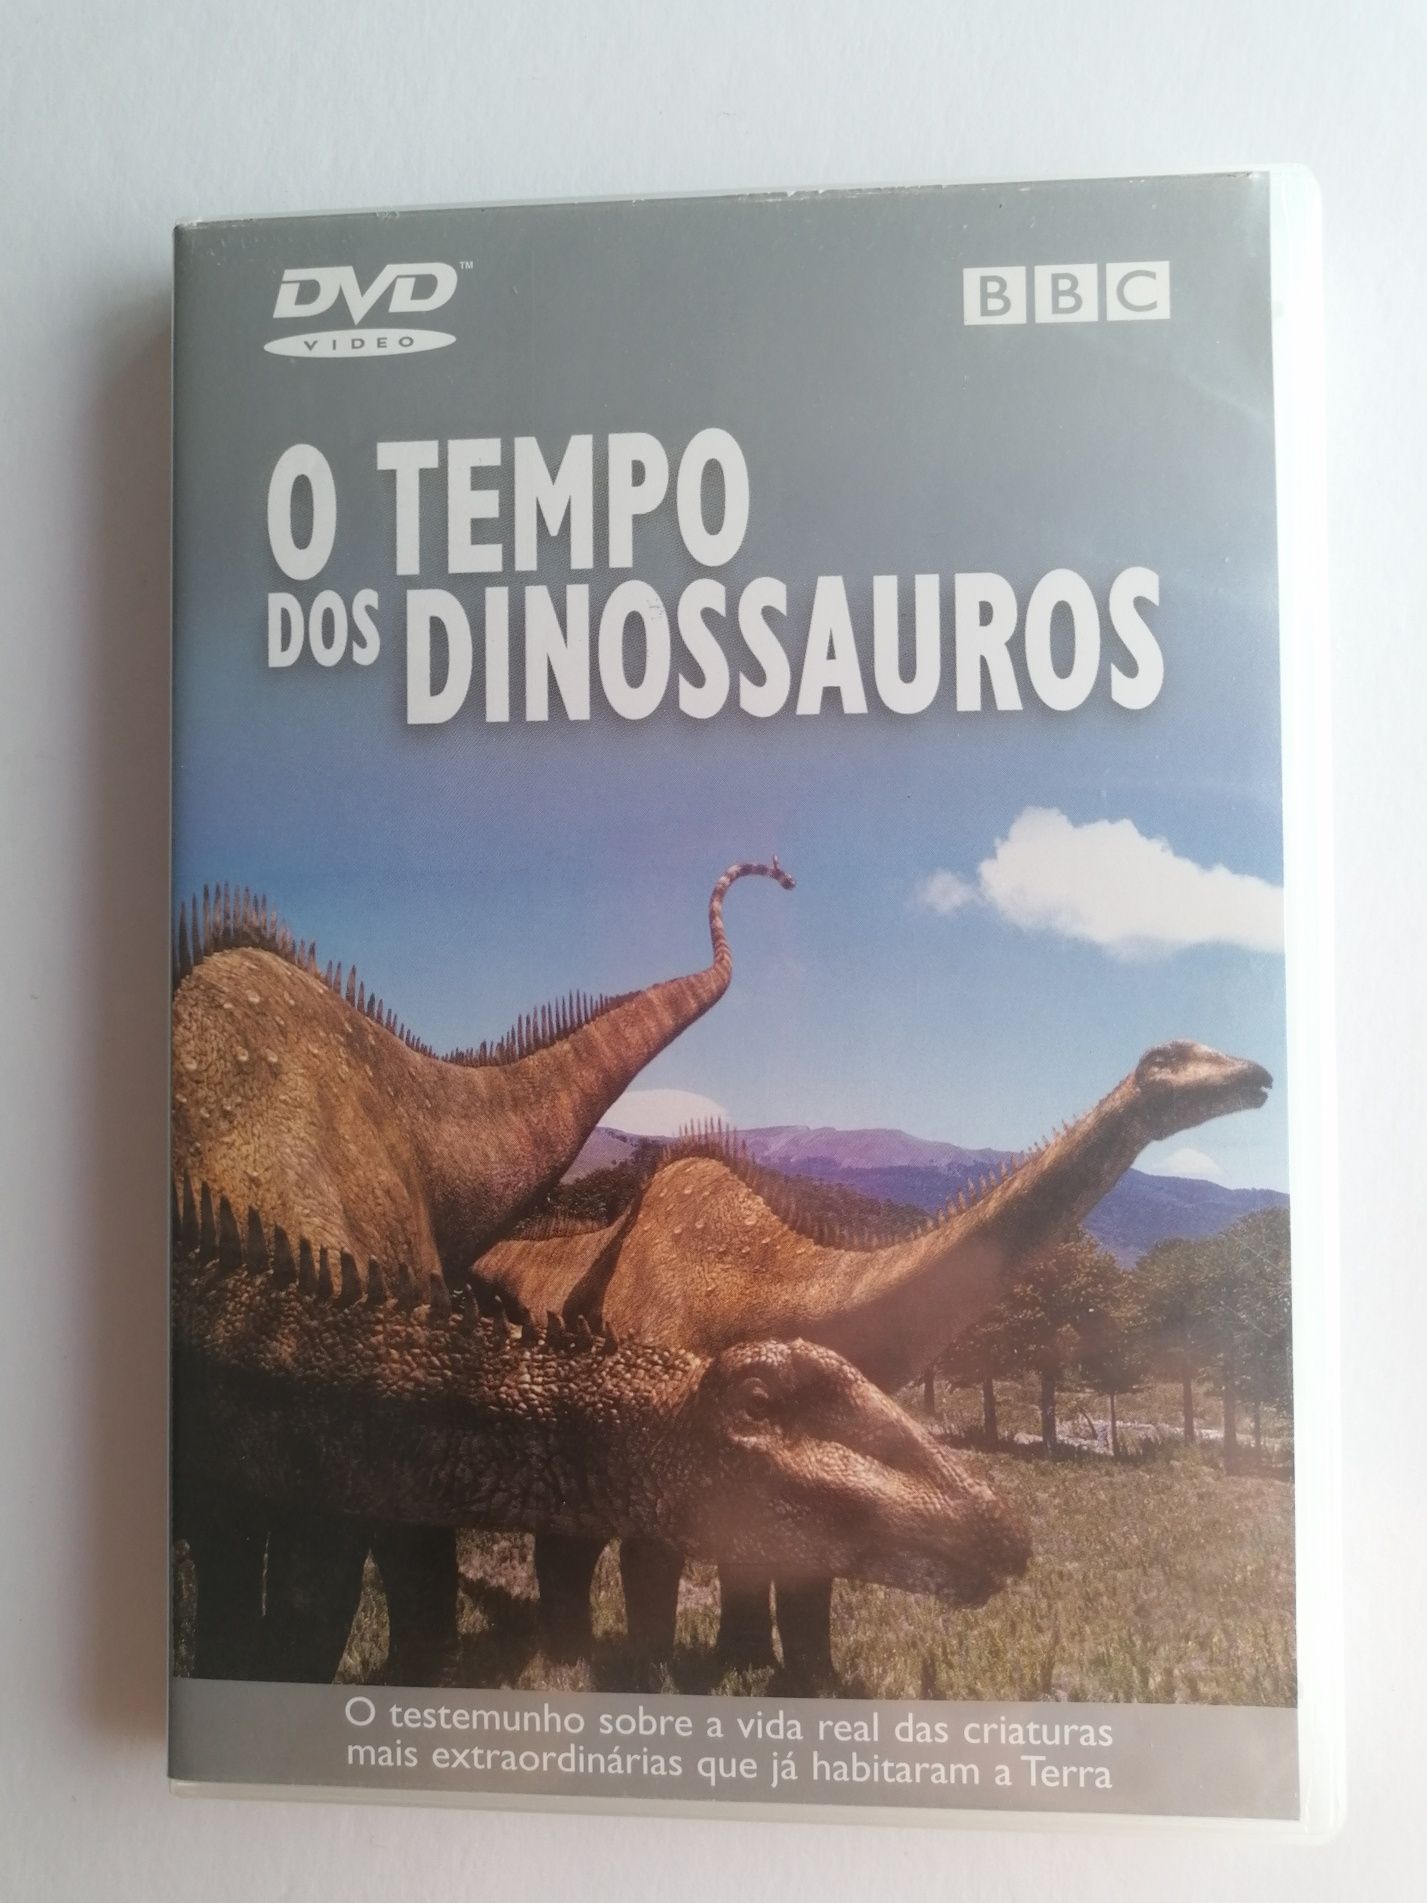 Dvd BBC O tempo dos dinossauros

Legendas em português e em inglês.